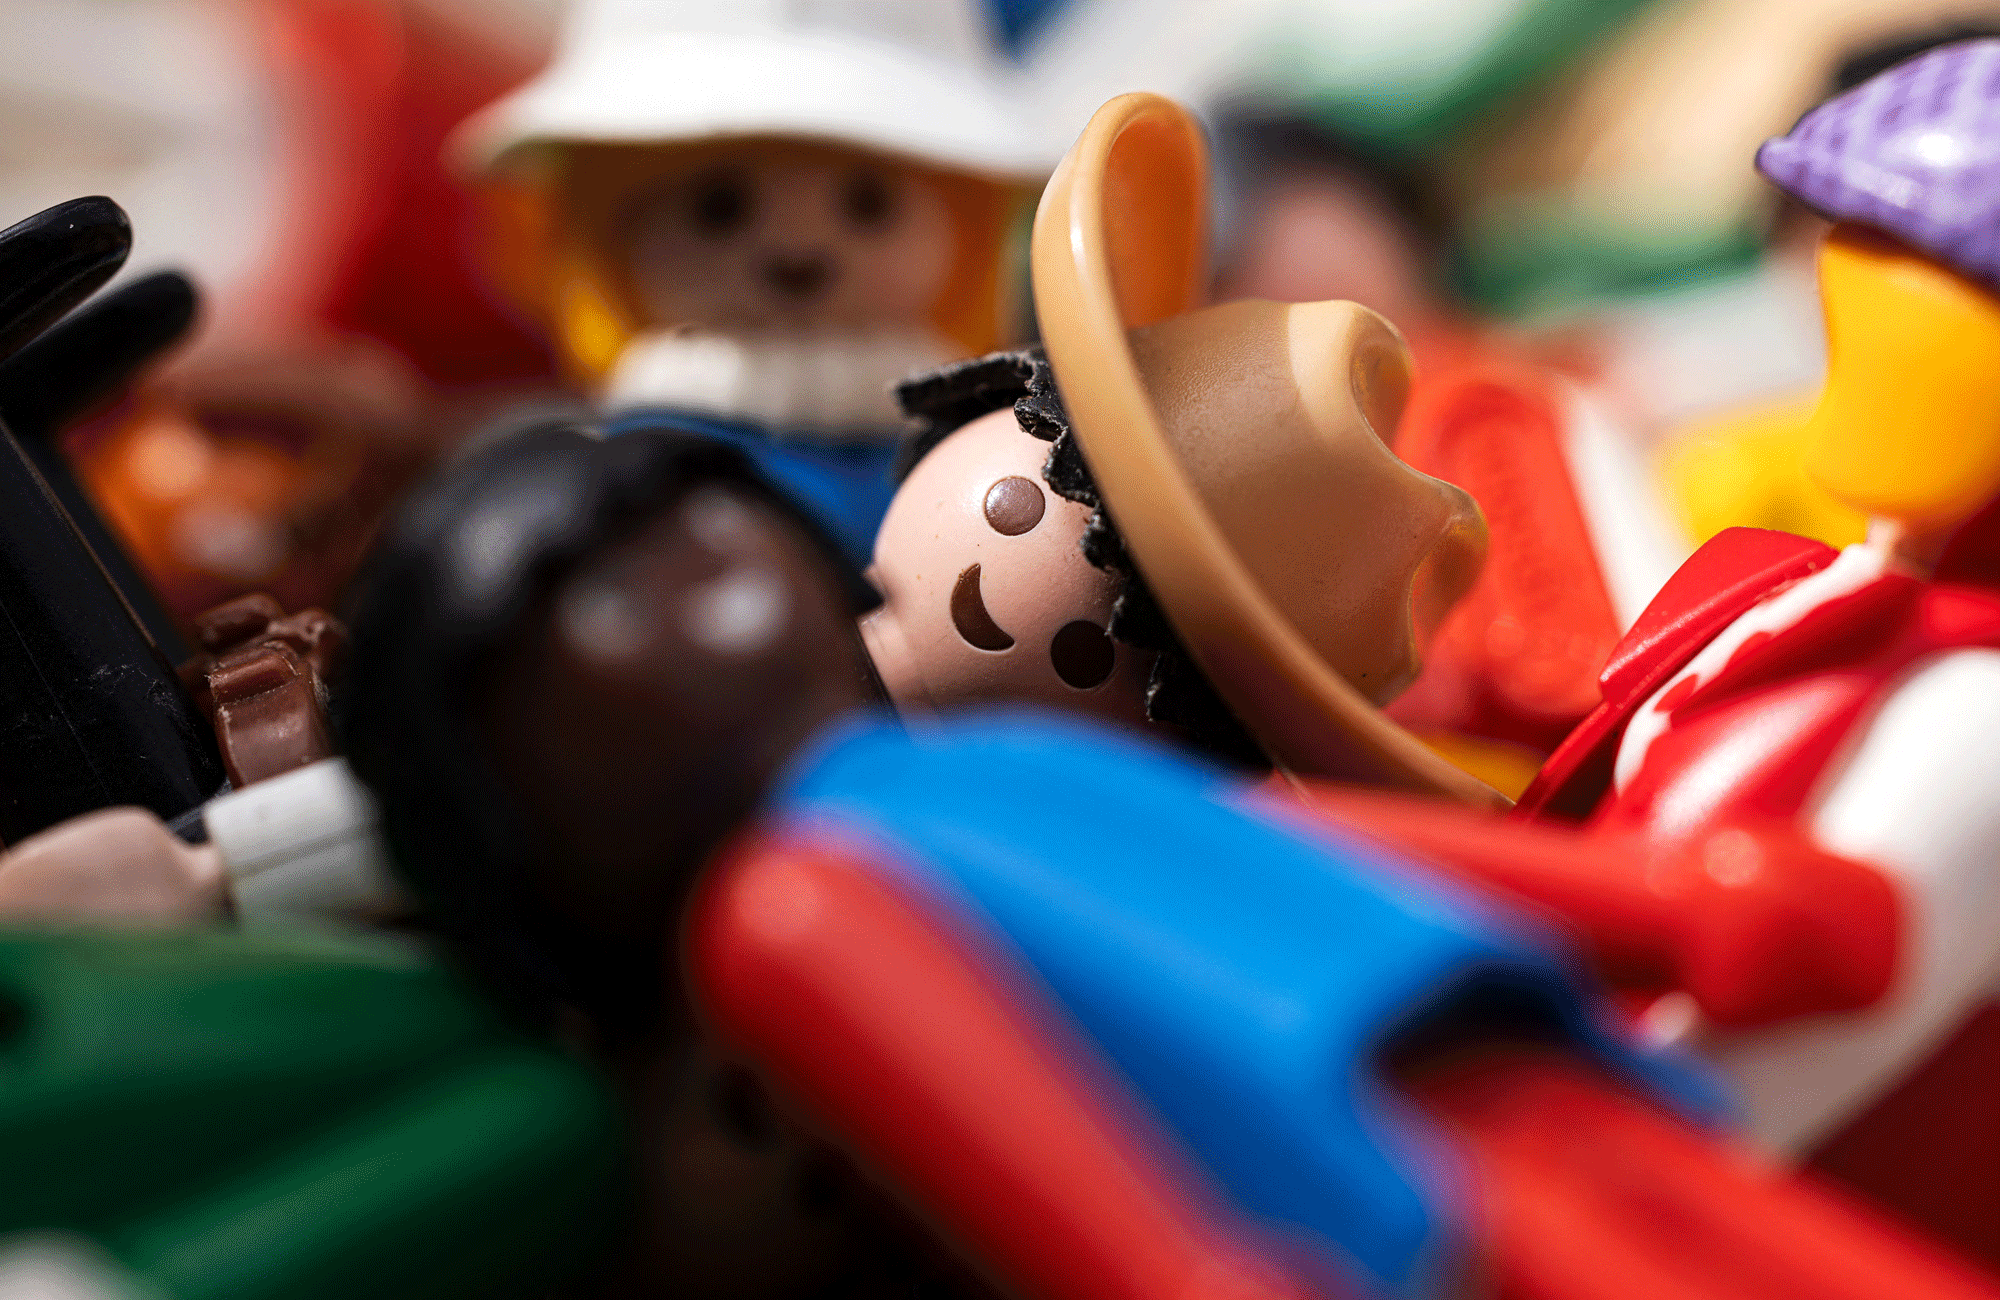 Les figurines Playmobil sont en crise : des centaines d'emplois